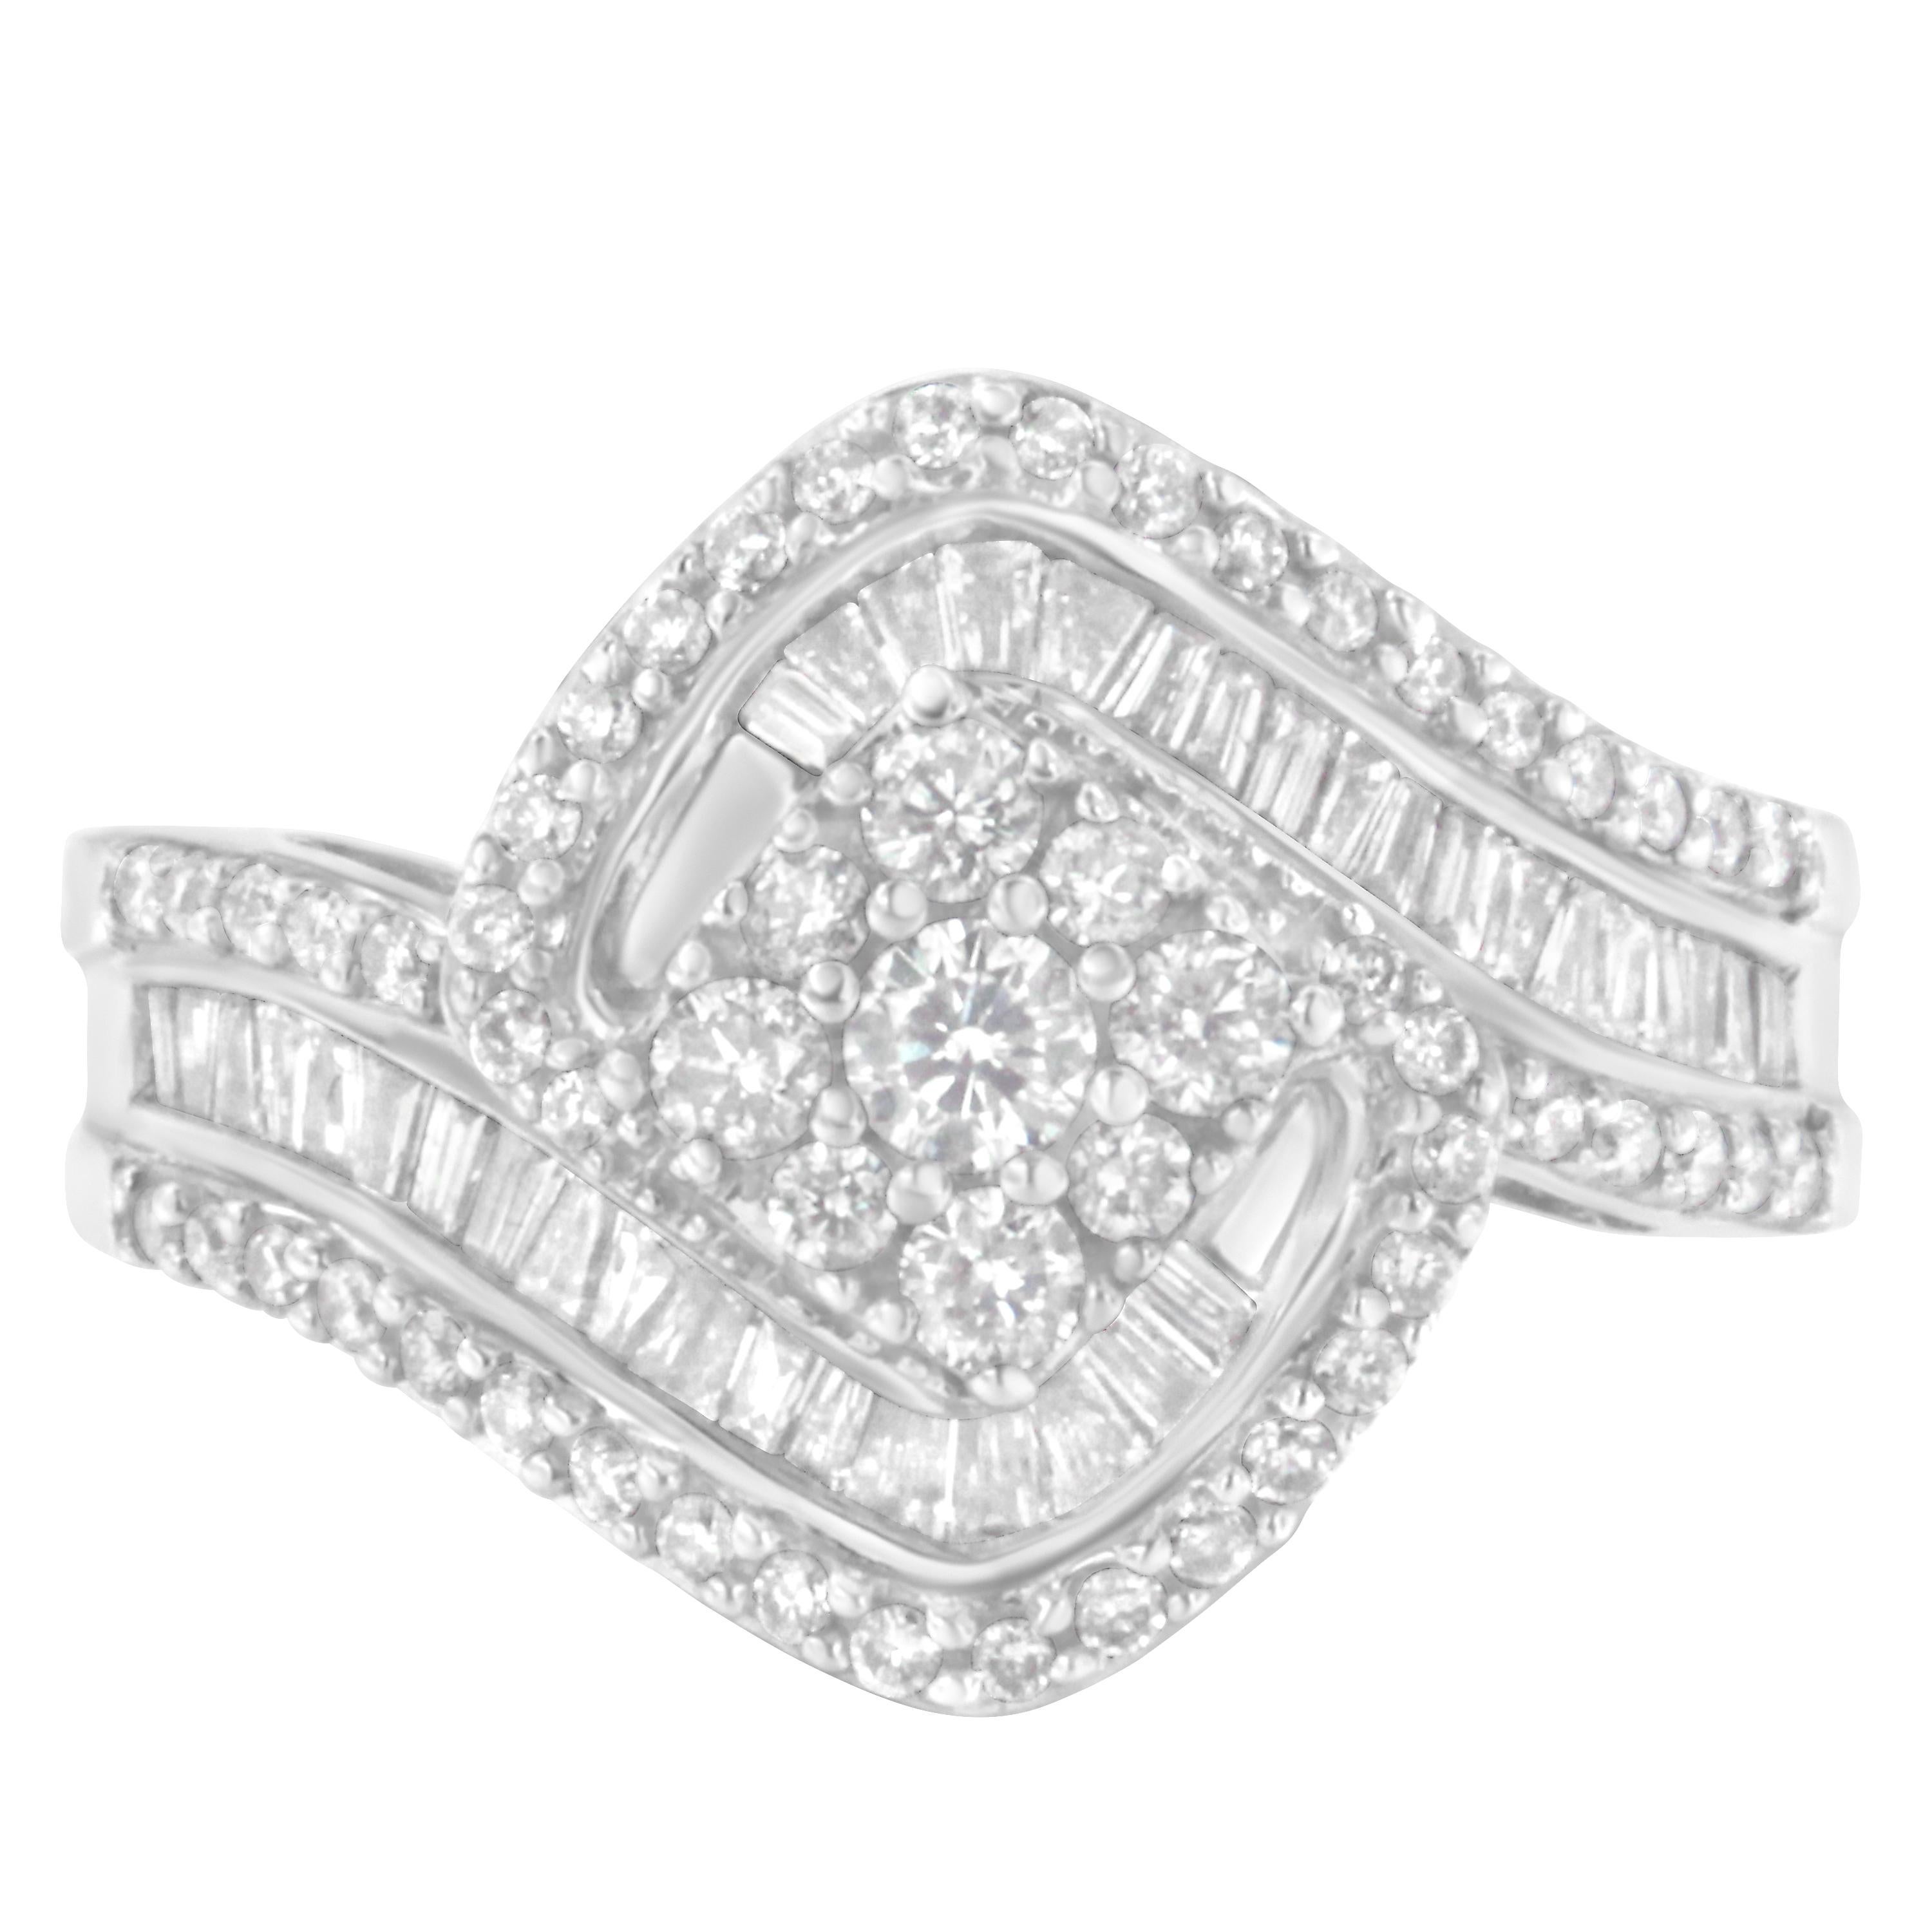 Setzen Sie mit diesem unglaublichen Diamantring ein elegantes und stilvolles Zeichen. Dieser modische Ring aus 14 Karat Weißgold ist in der Zackenfassung mit Diamanten im Rund- und Baguetteschliff eingefasst. Dieser Ring ist ein perfektes Beispiel